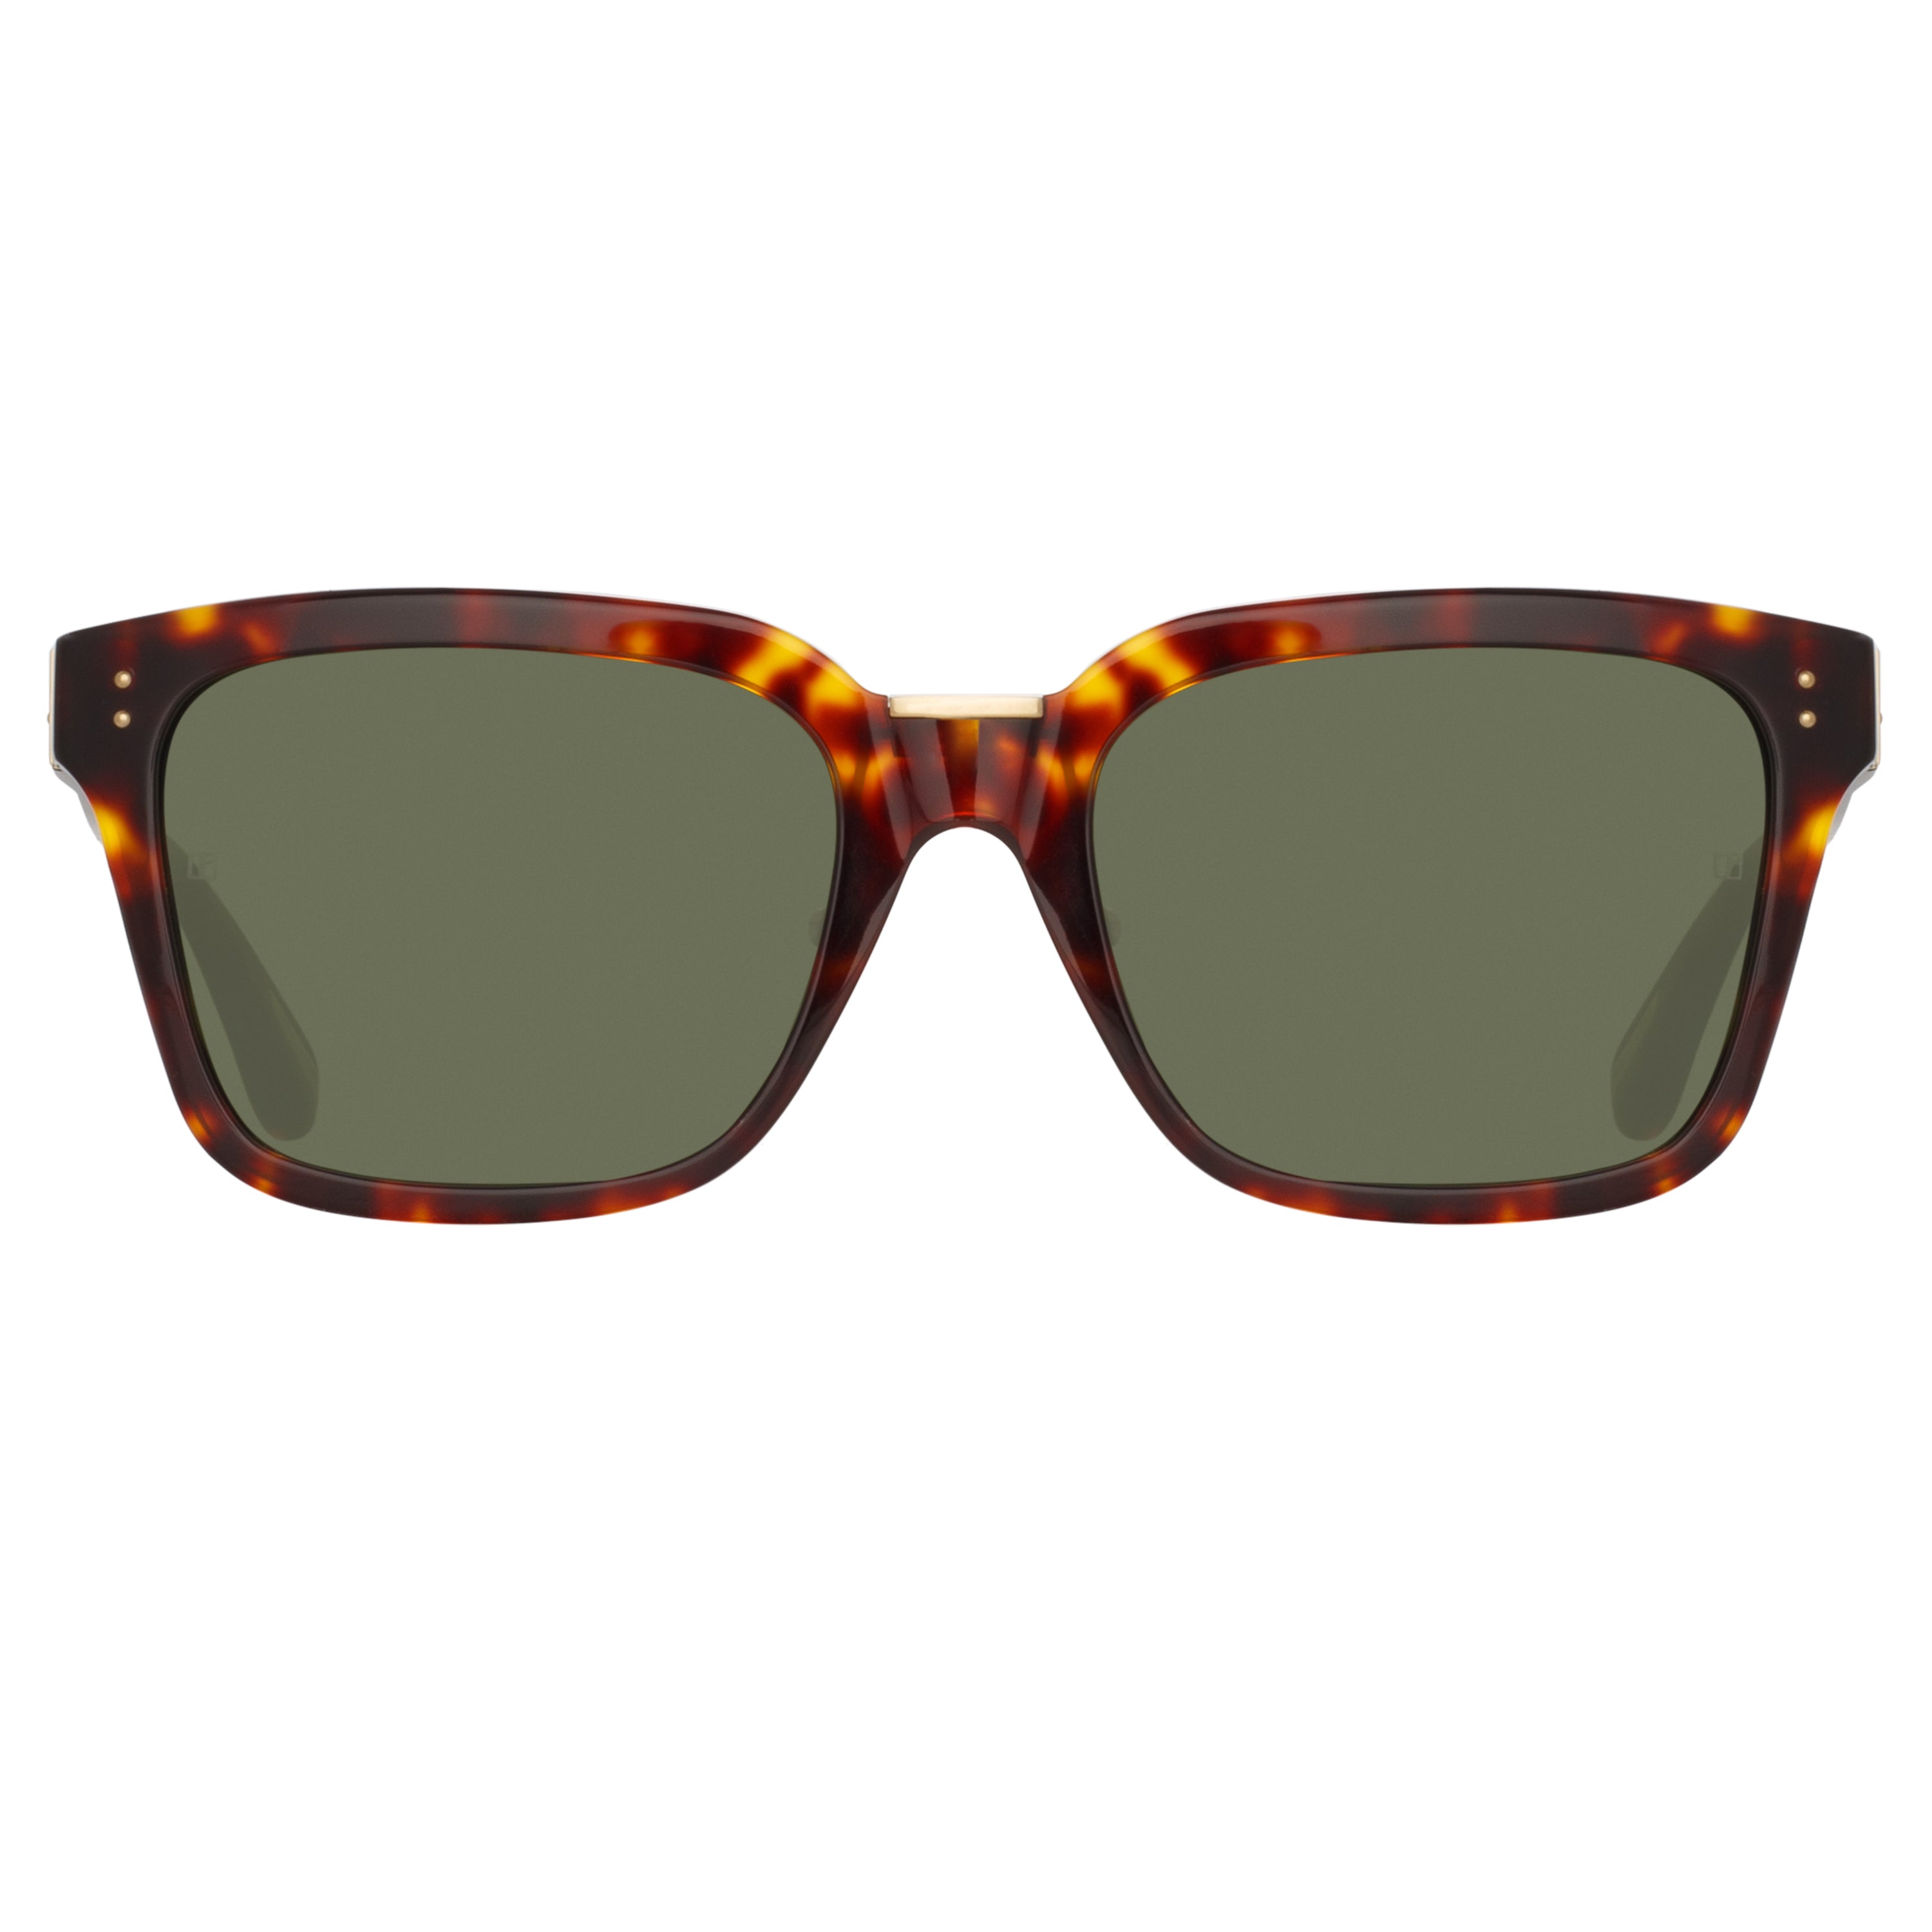 Desiree D-Frame Sunglasses in Tortoiseshell